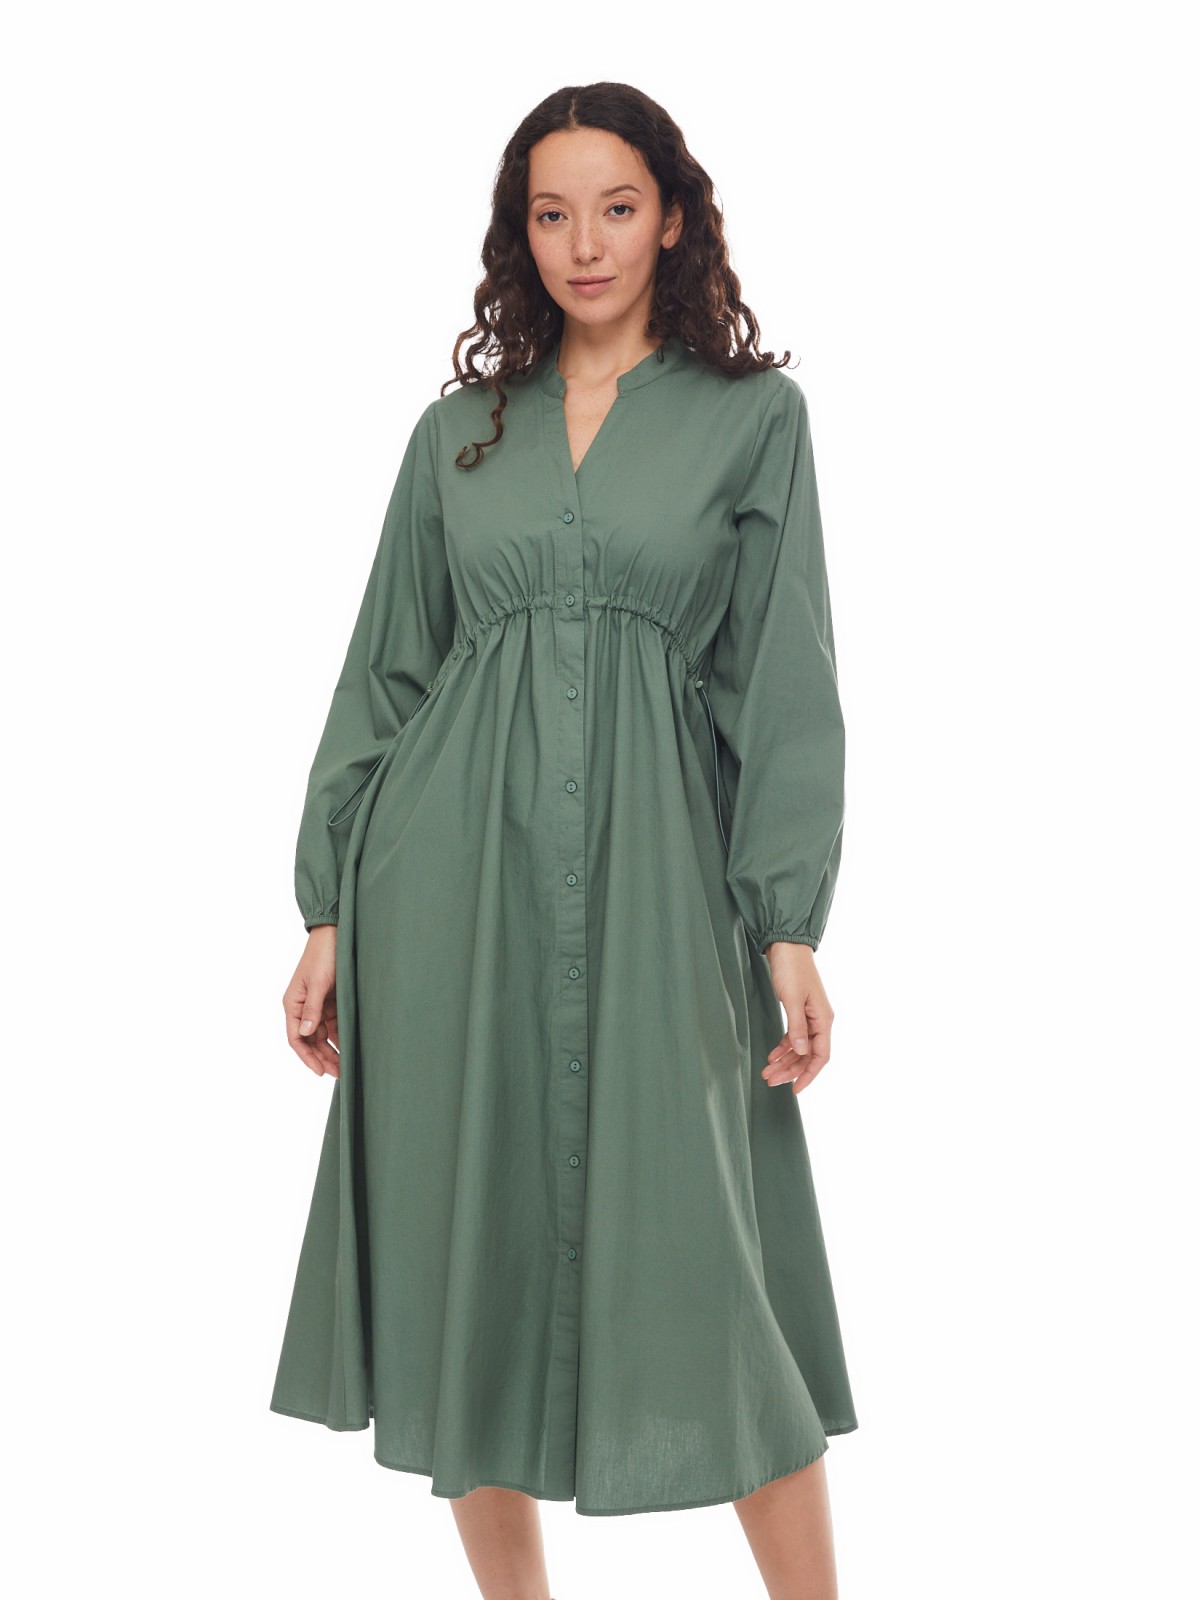 Платье-рубашка длины миди из хлопка с драпировкой на талии zolla 024138240301, цвет хаки, размер XS